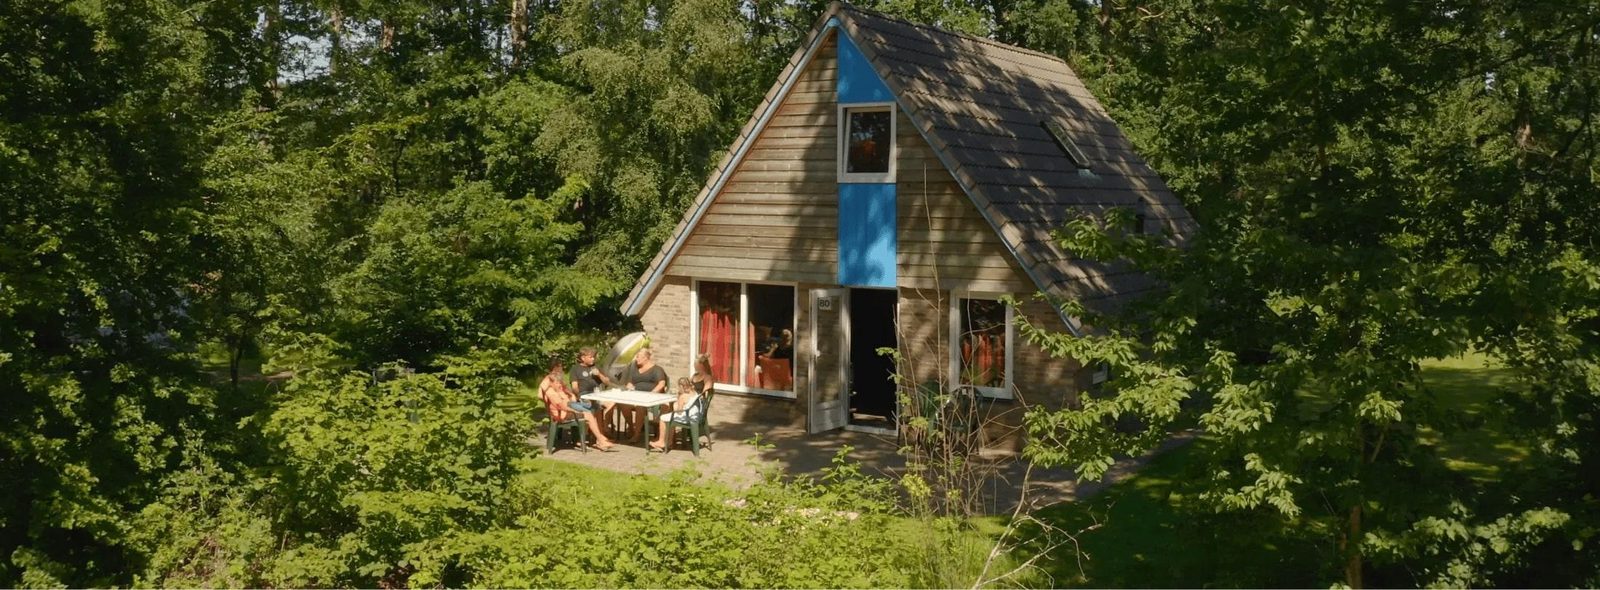 Bekijk onze bungalows in Drenthe